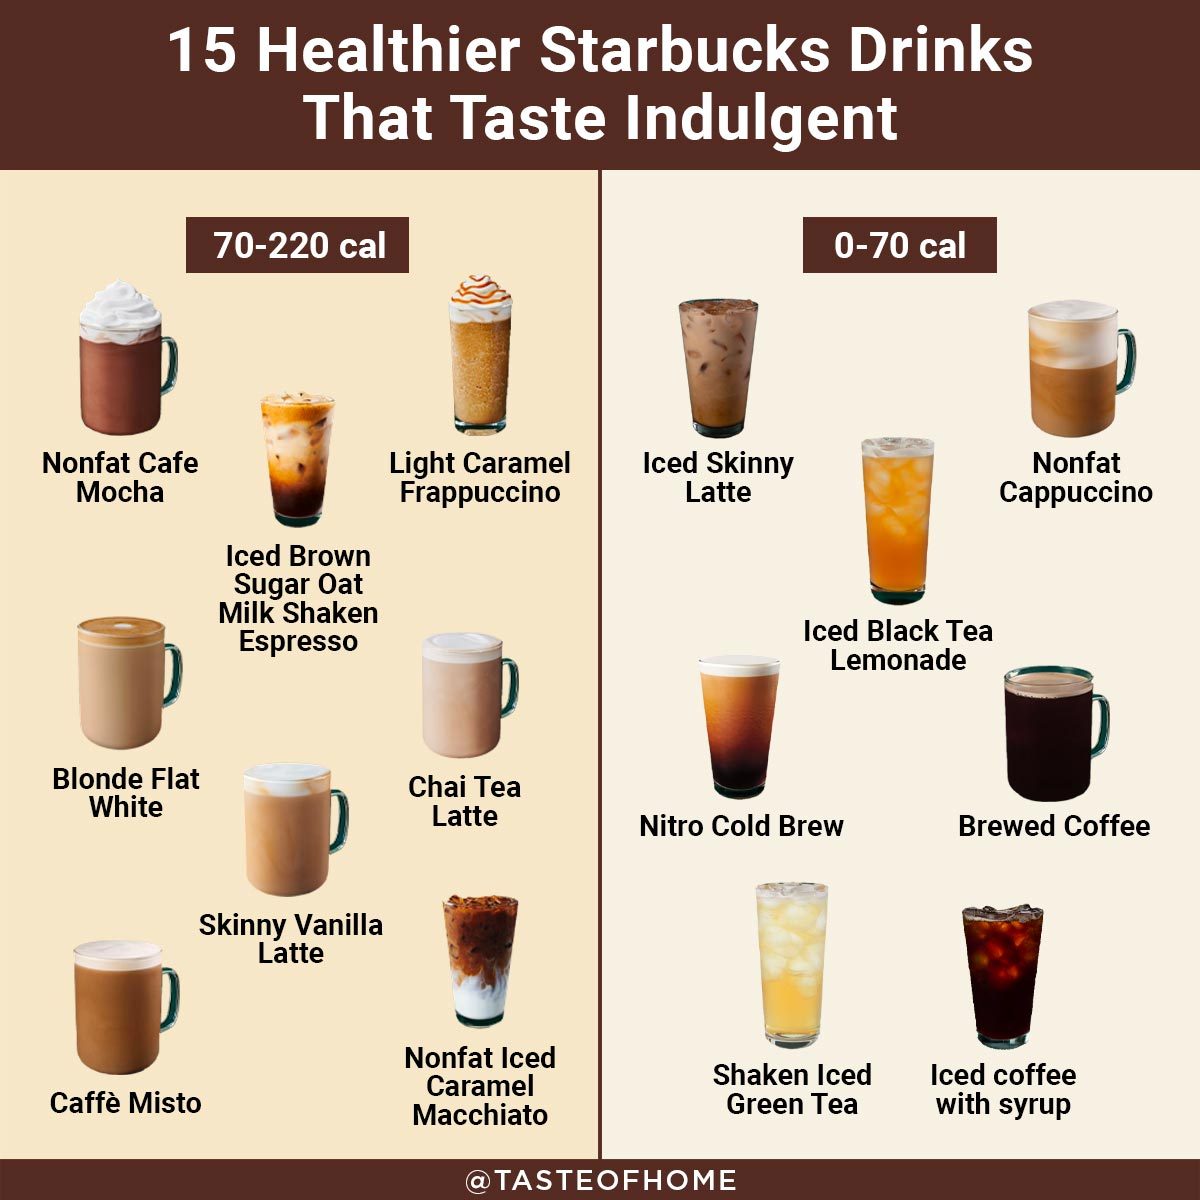 Low-calorie beverages